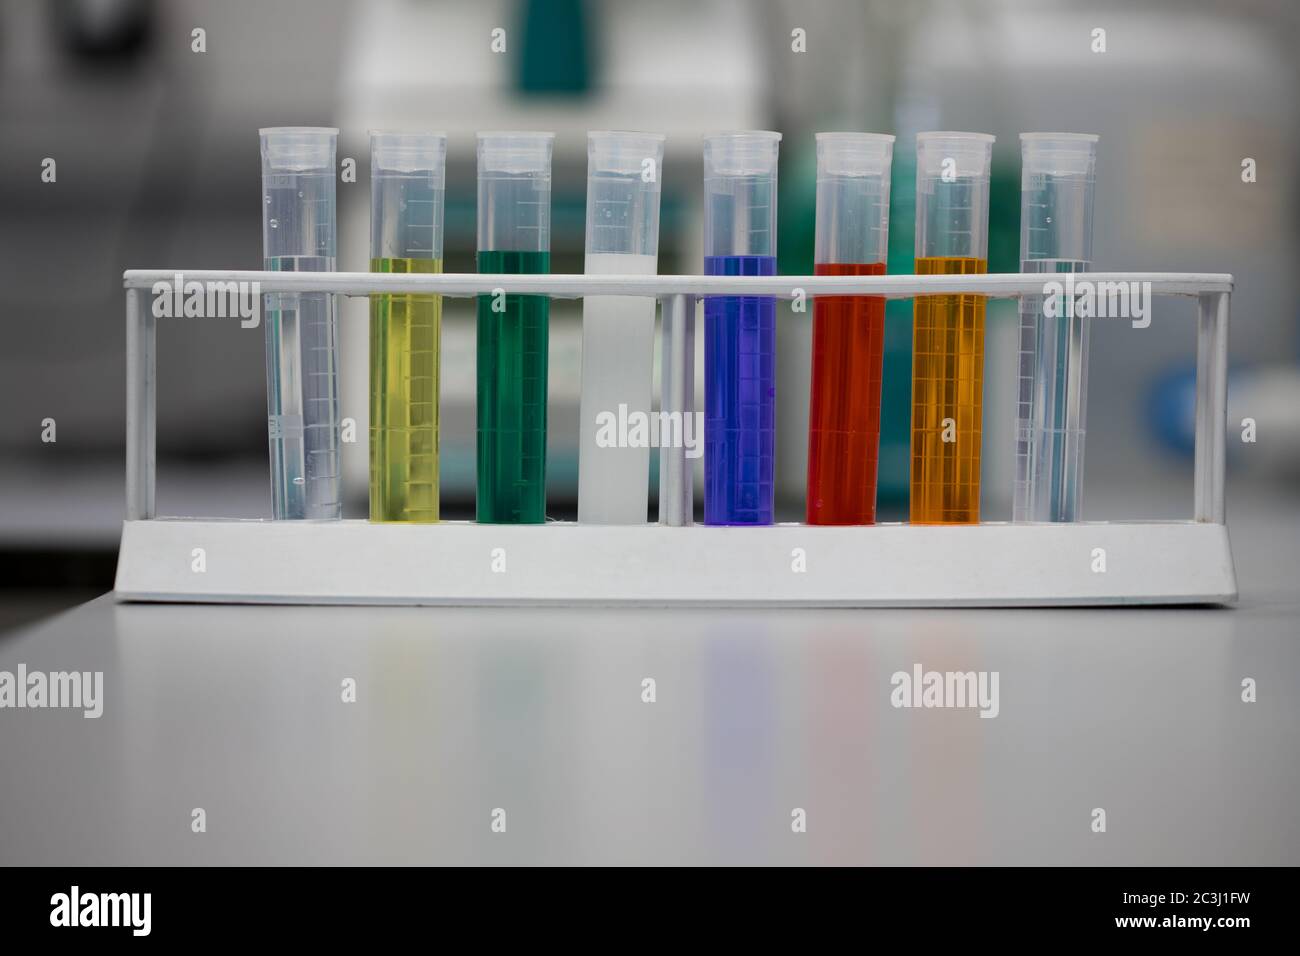 Analisi chimica delle soluzioni in laboratorio. Prodotti chimici colorati in provette Foto Stock